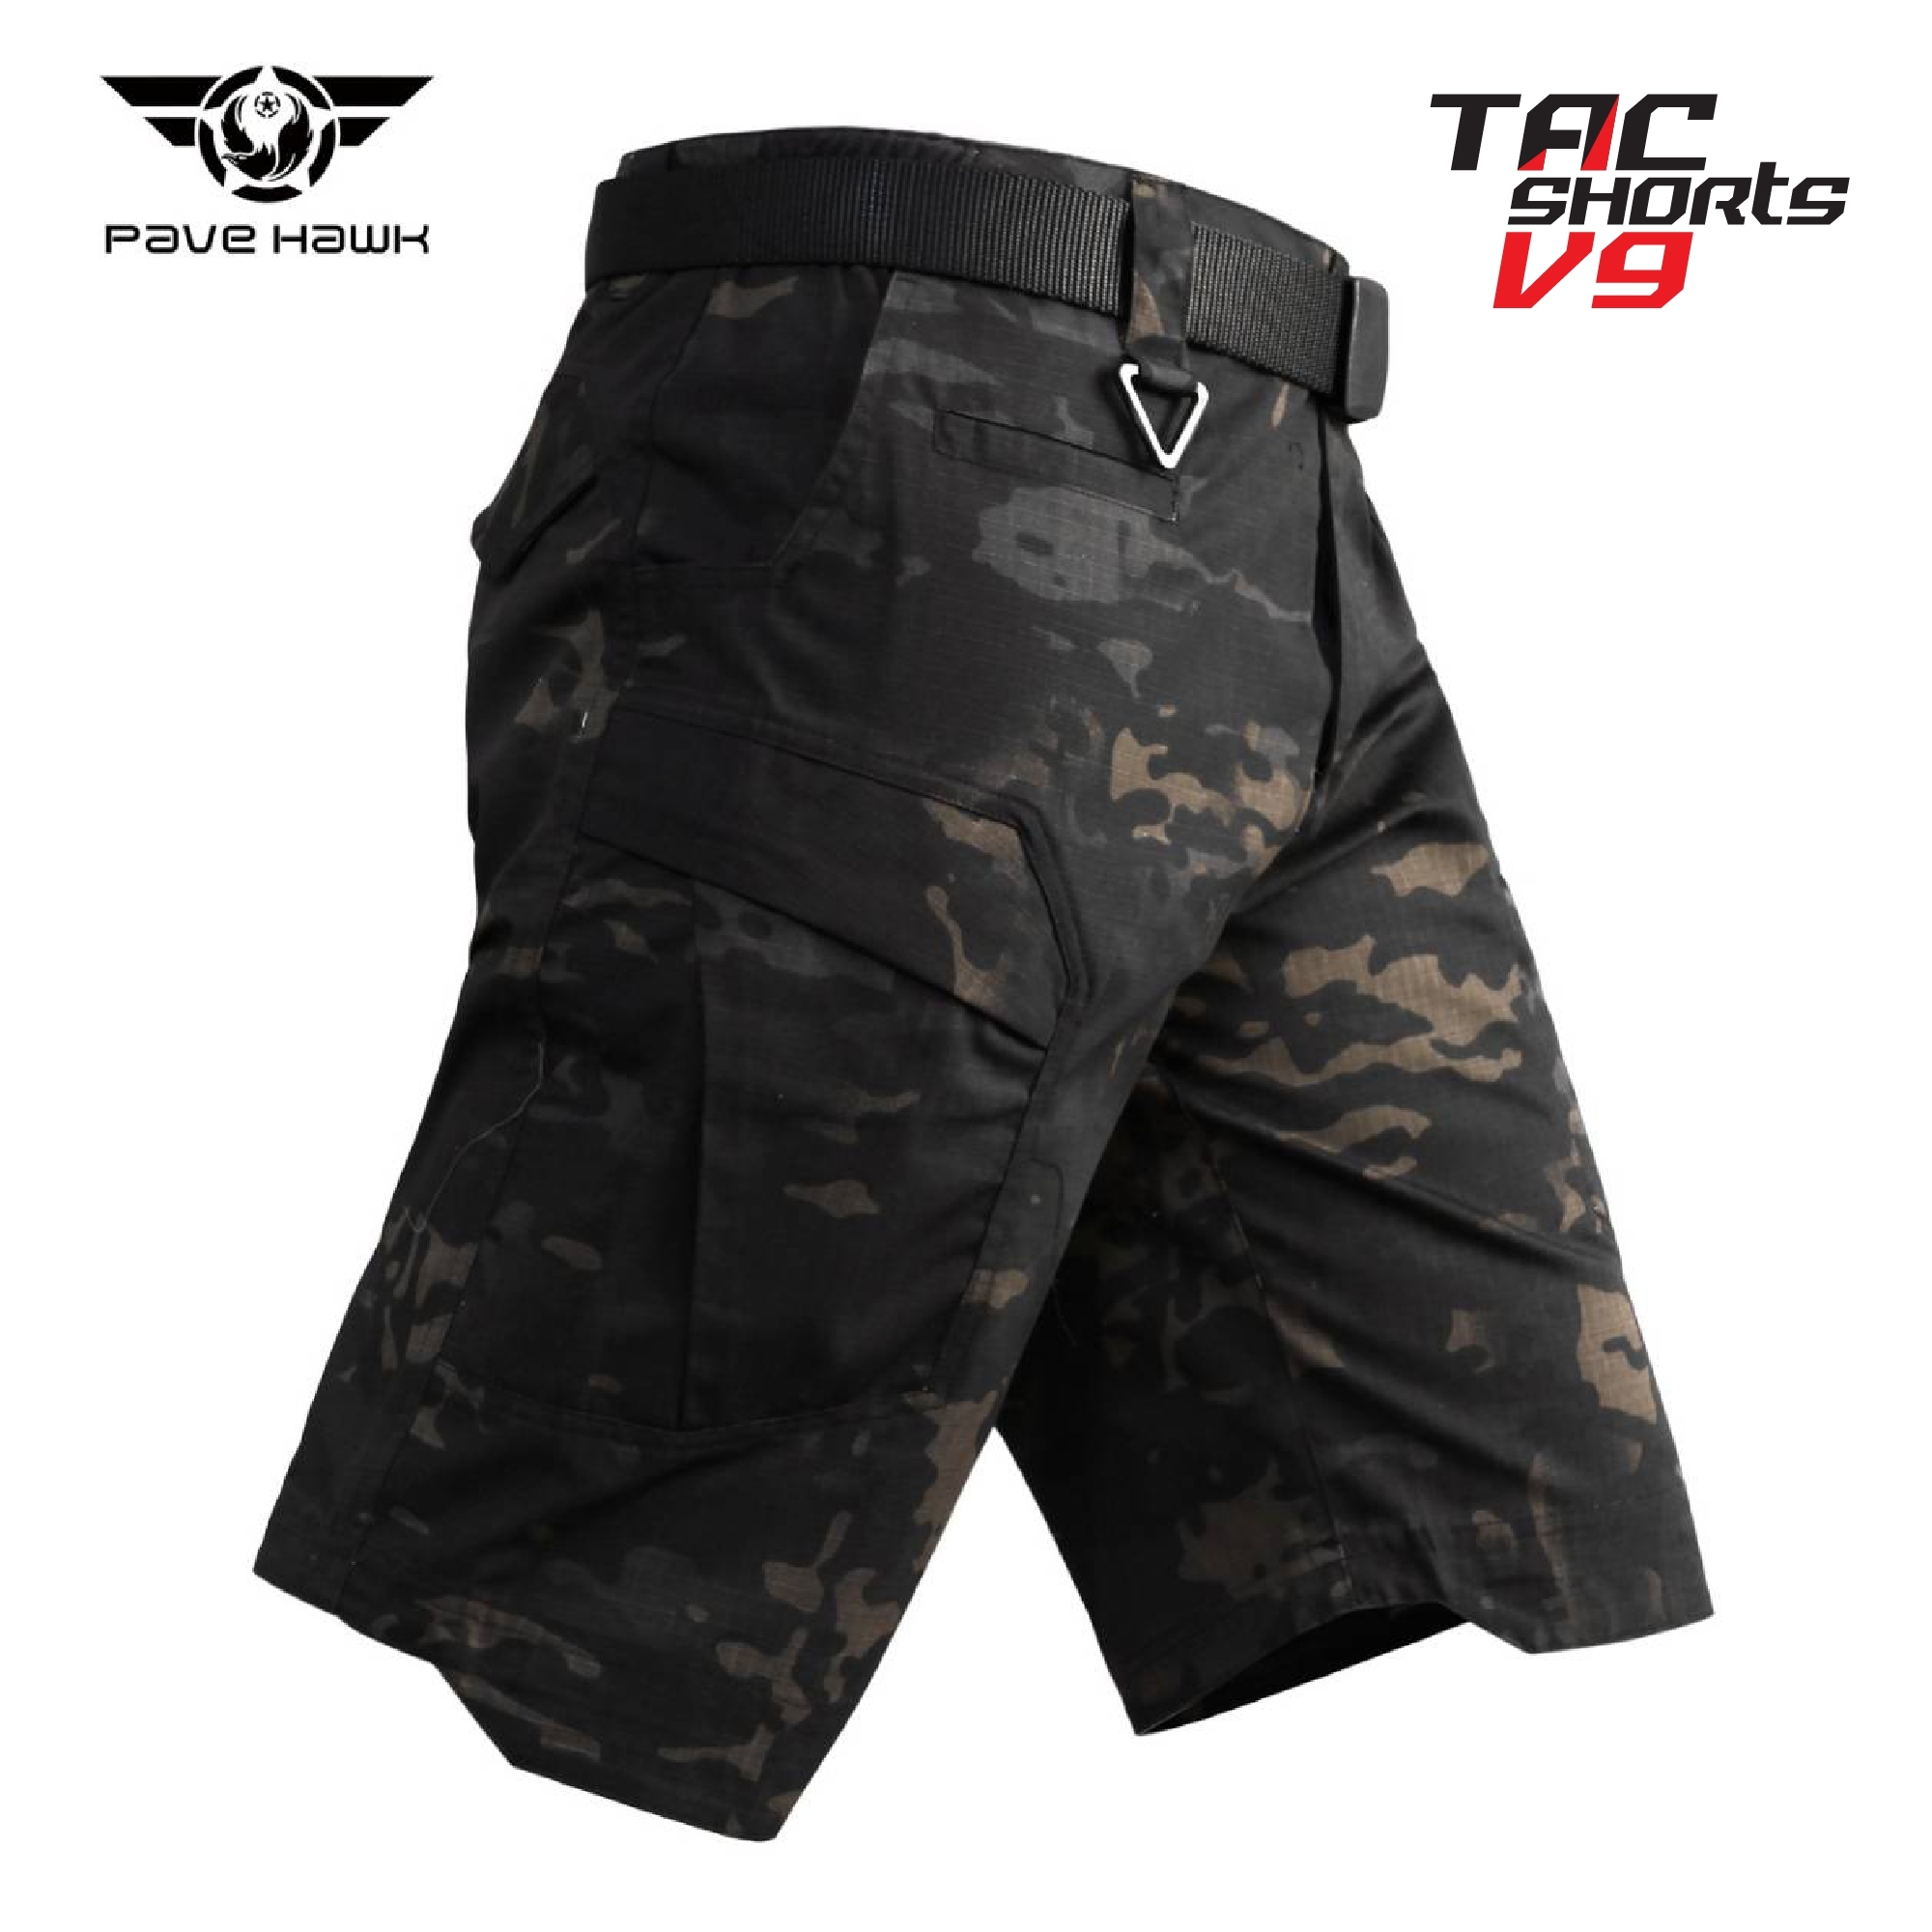 กางเกงขาสั้น Tactical Shorts V9 กางเกงยุทธวิธี ขาสั้น กางเกง TACTICAL Update 09/07/64